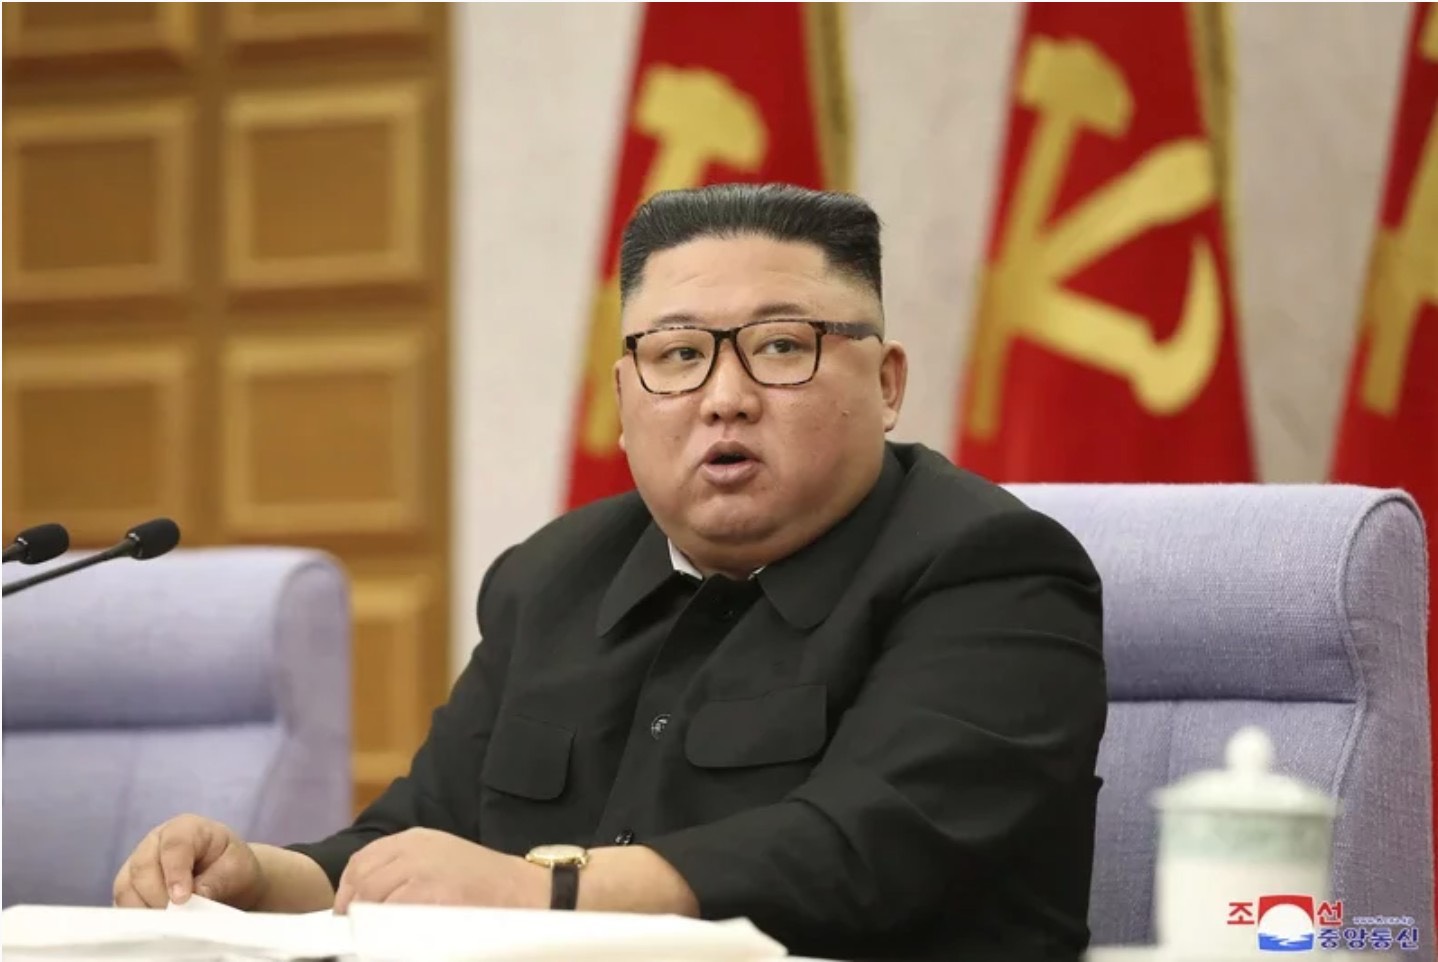 联合国报告指北韩可能从事核燃料再处理以制造核弹，美国国防部表达关切，并说这类活动恐导致华府与平壤当局紧张升高。